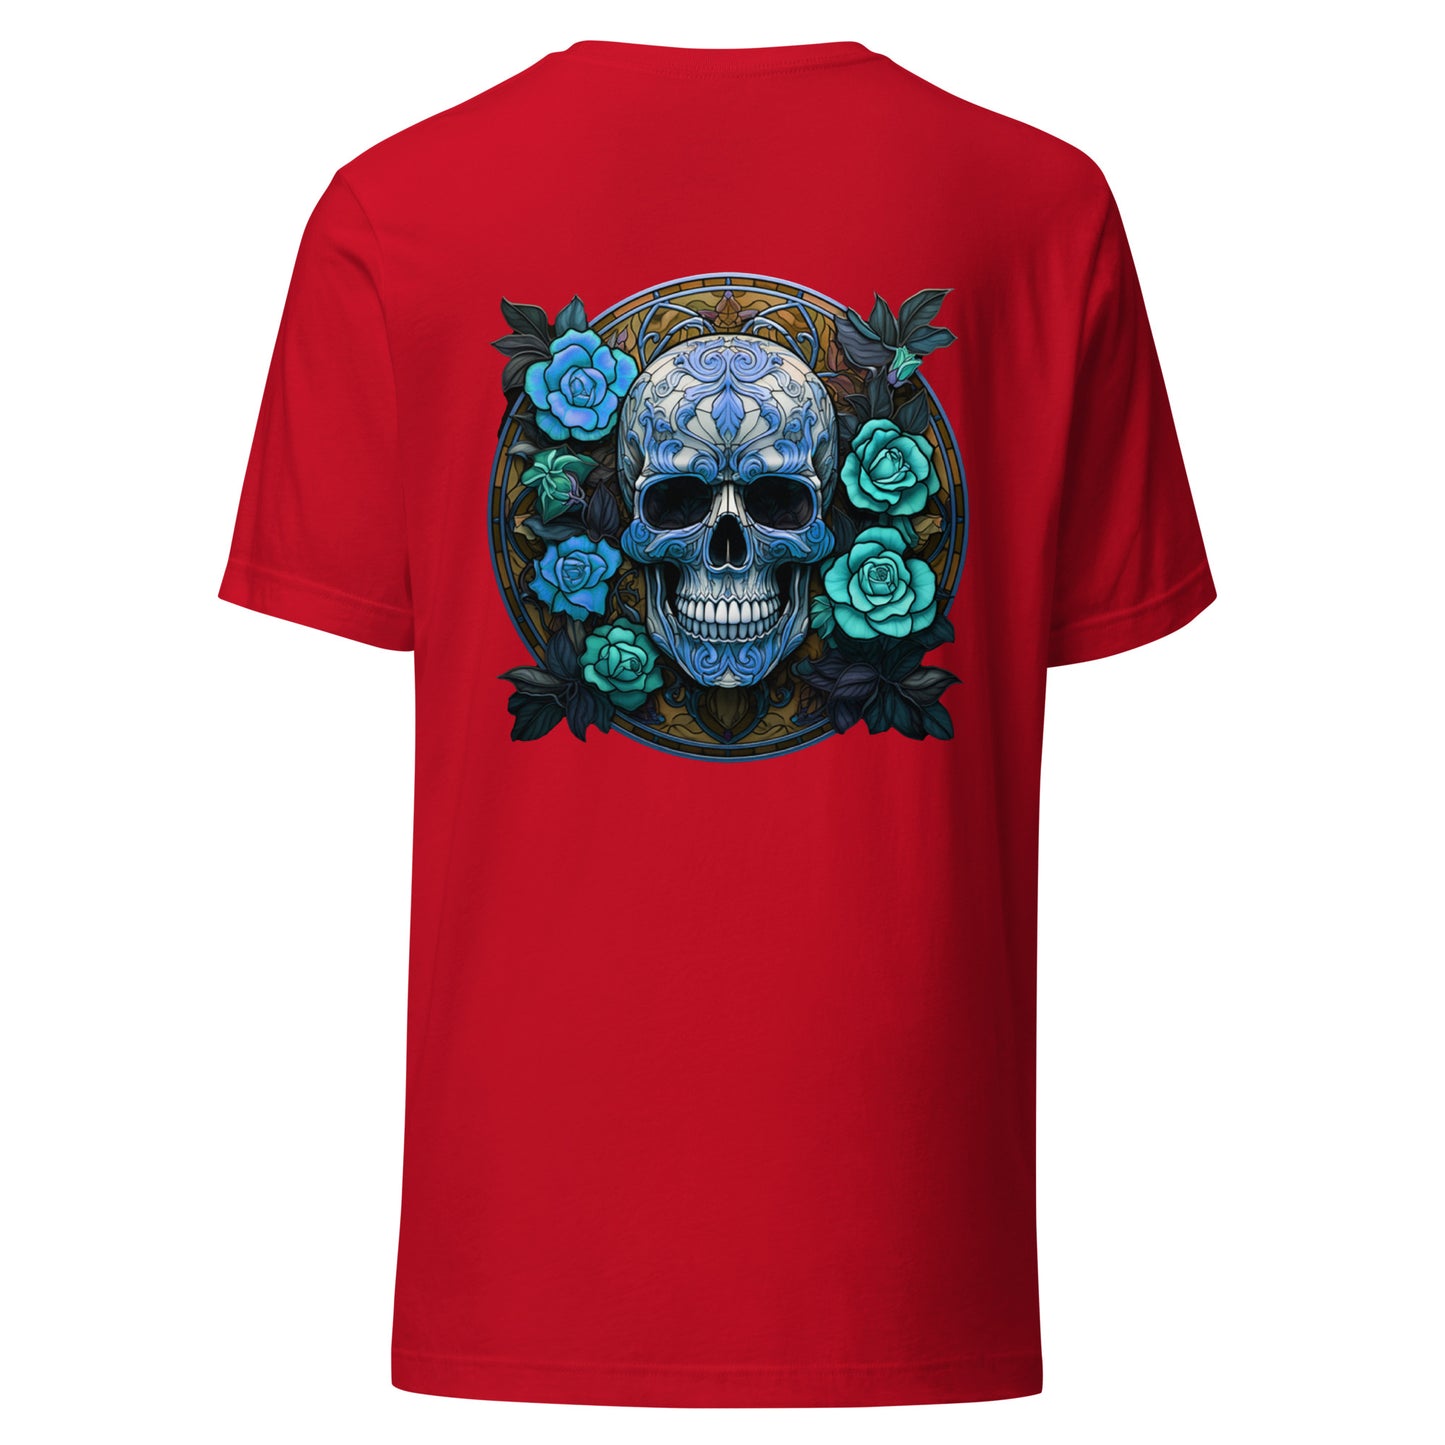 Skull & Roses t-shirt